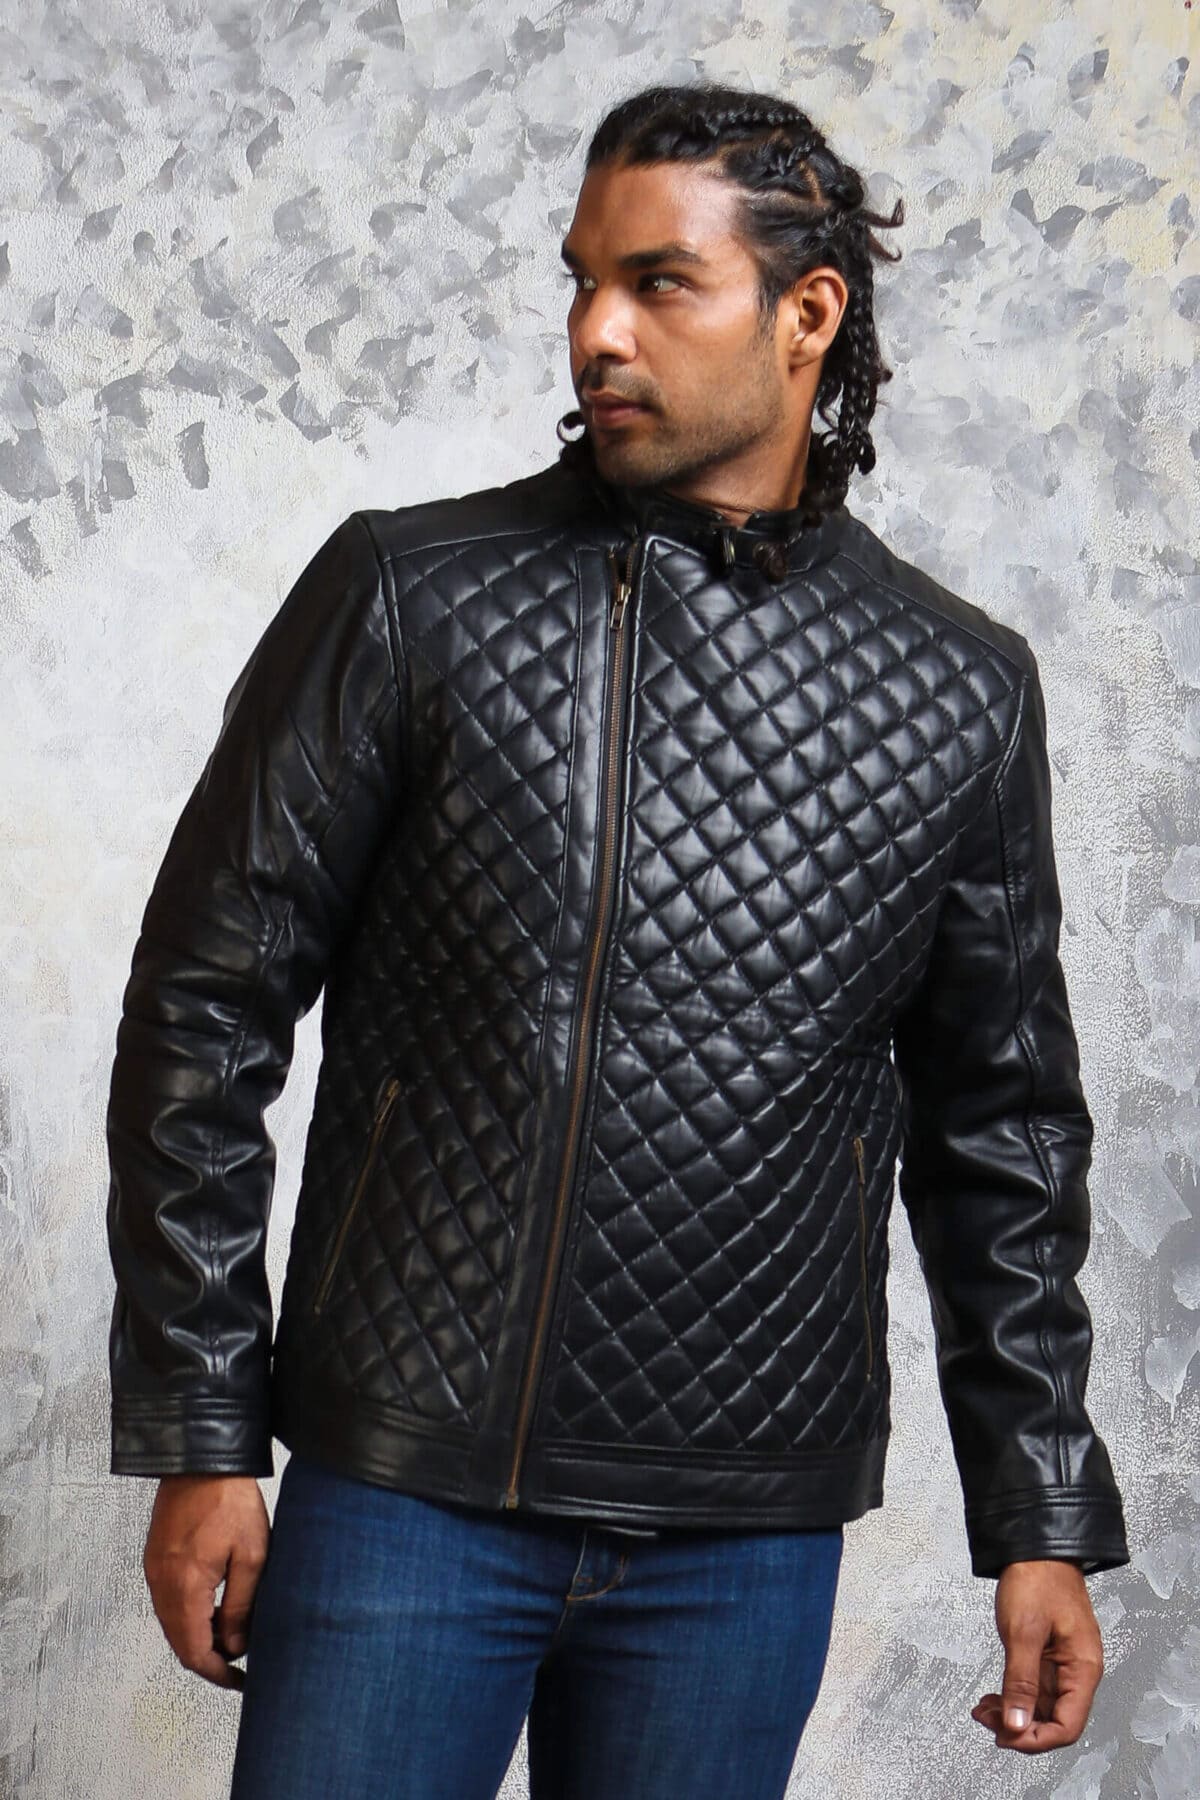 Sociale wetenschappen evenaar salaris Men's Diamond Quilted Jacket in Real Leather Black Winter Outfit